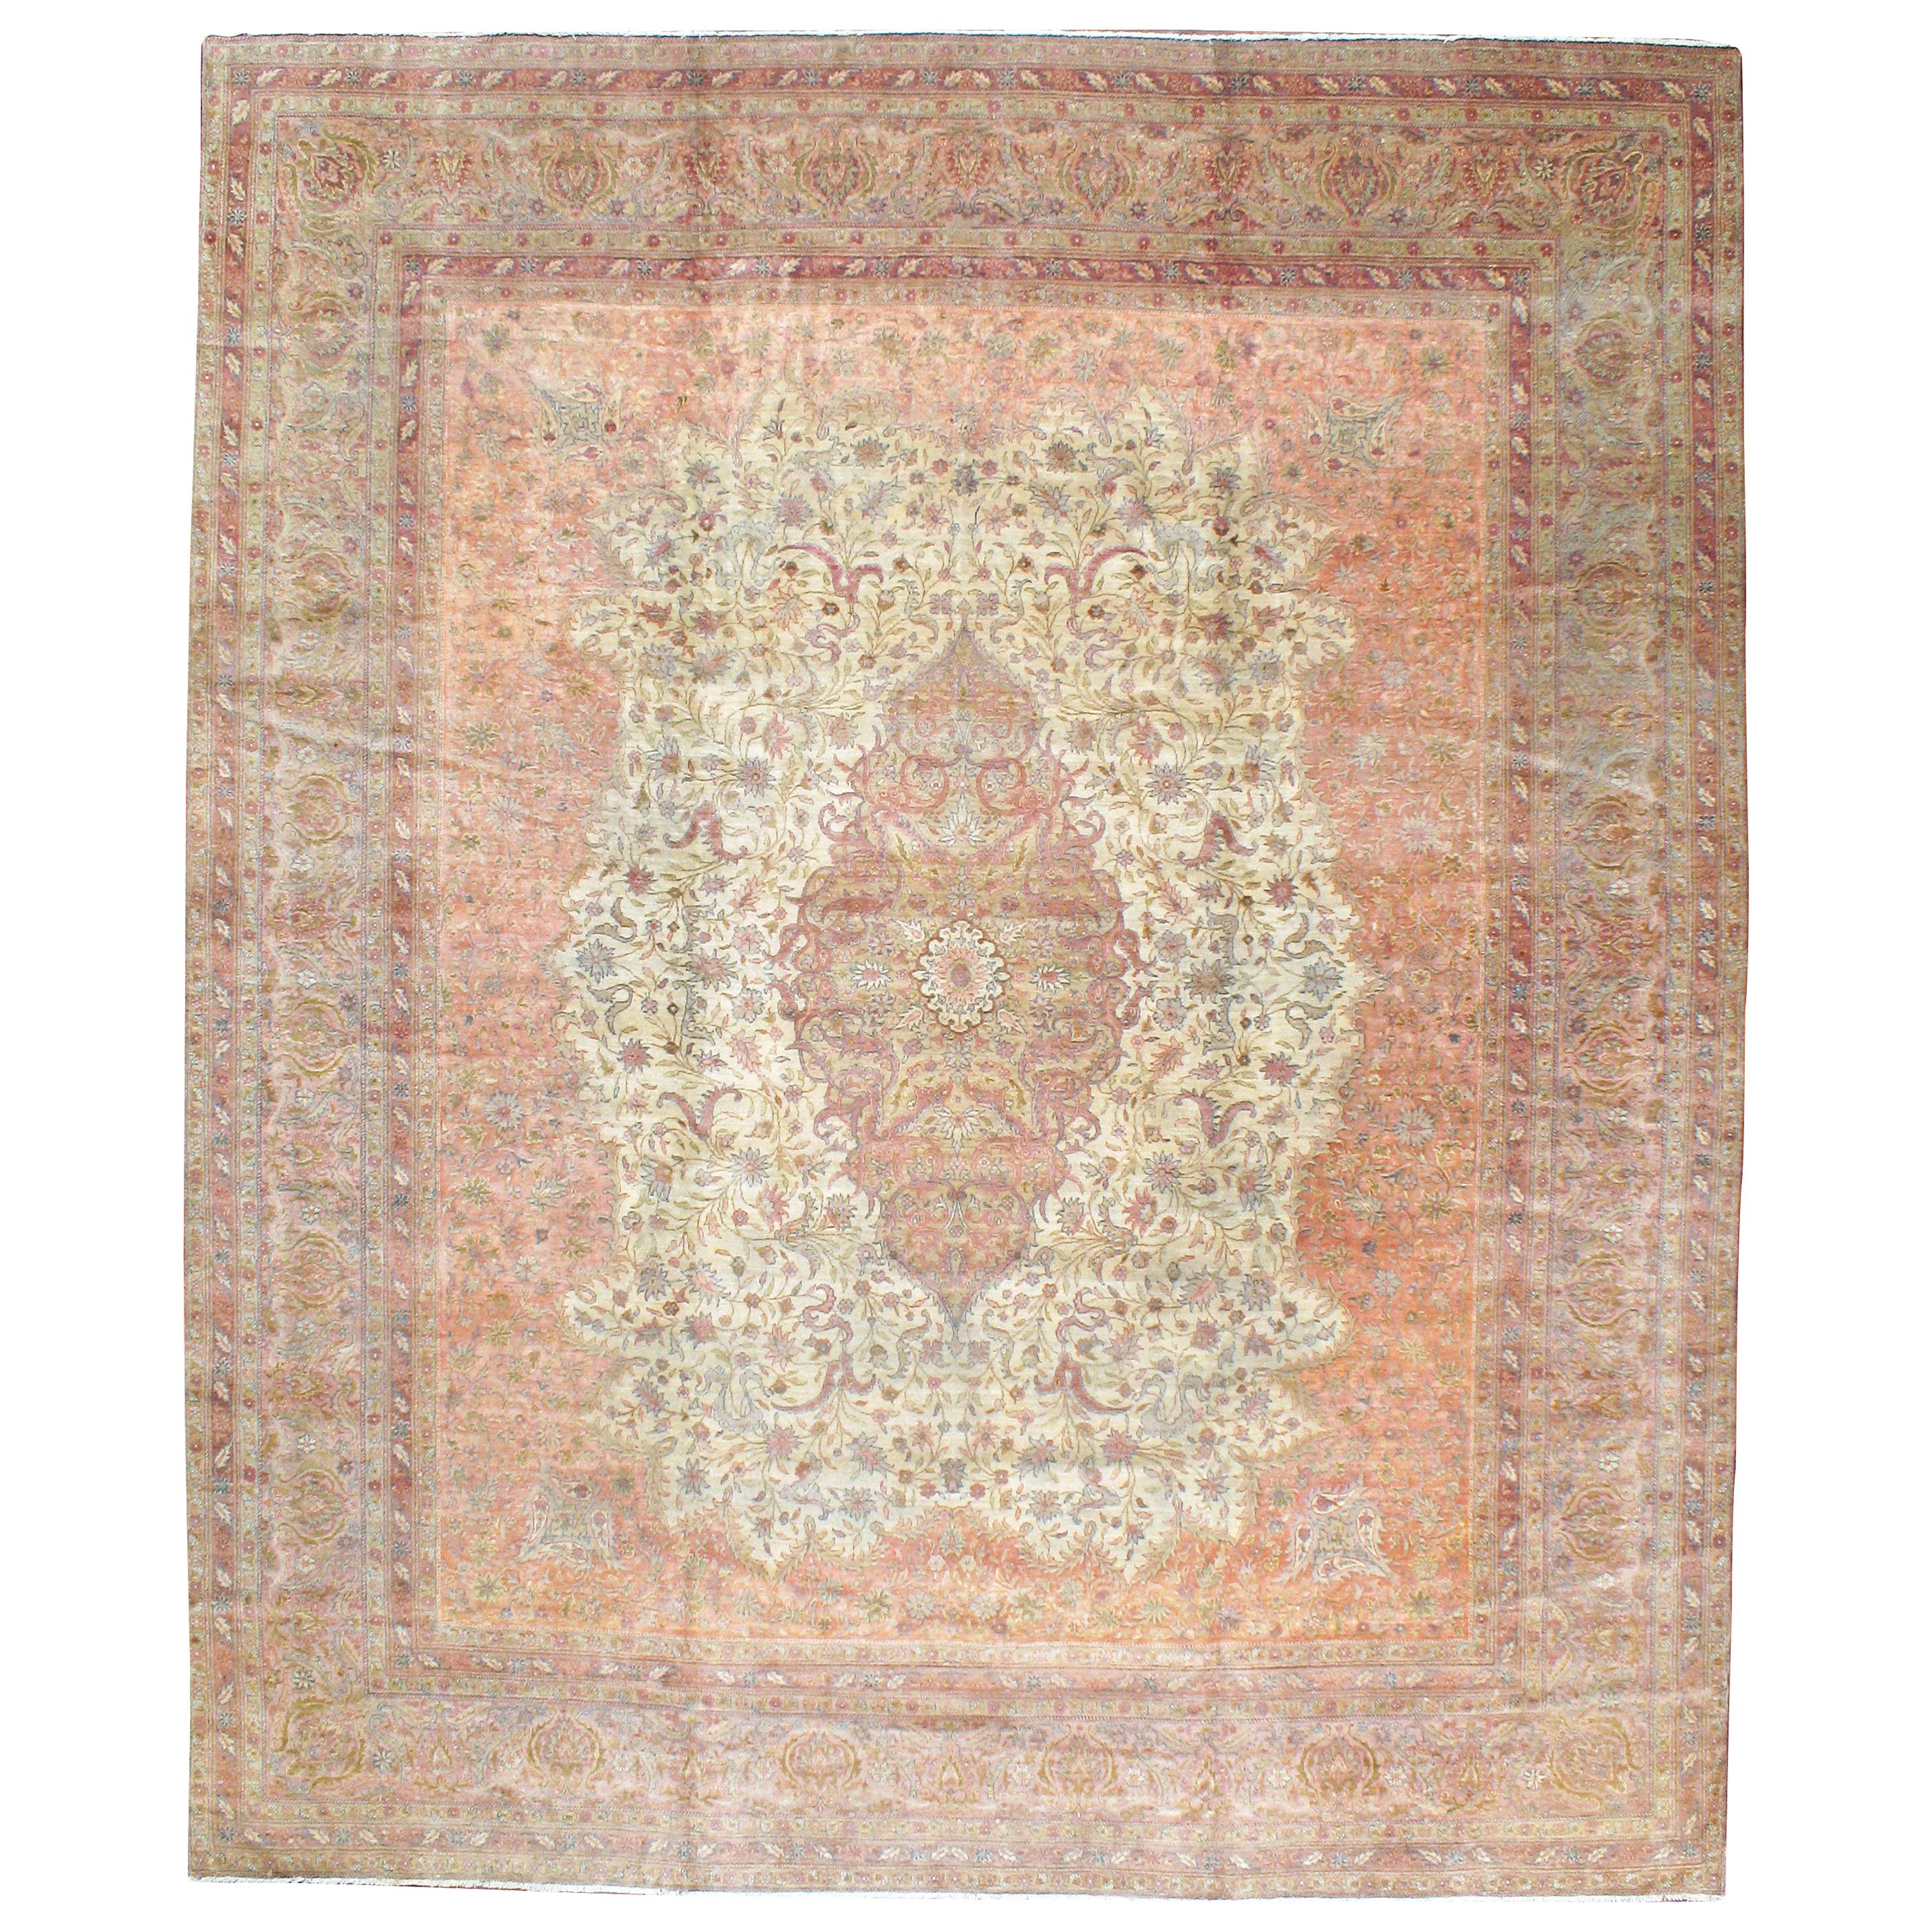 Antique Turkish Sivas Carpet